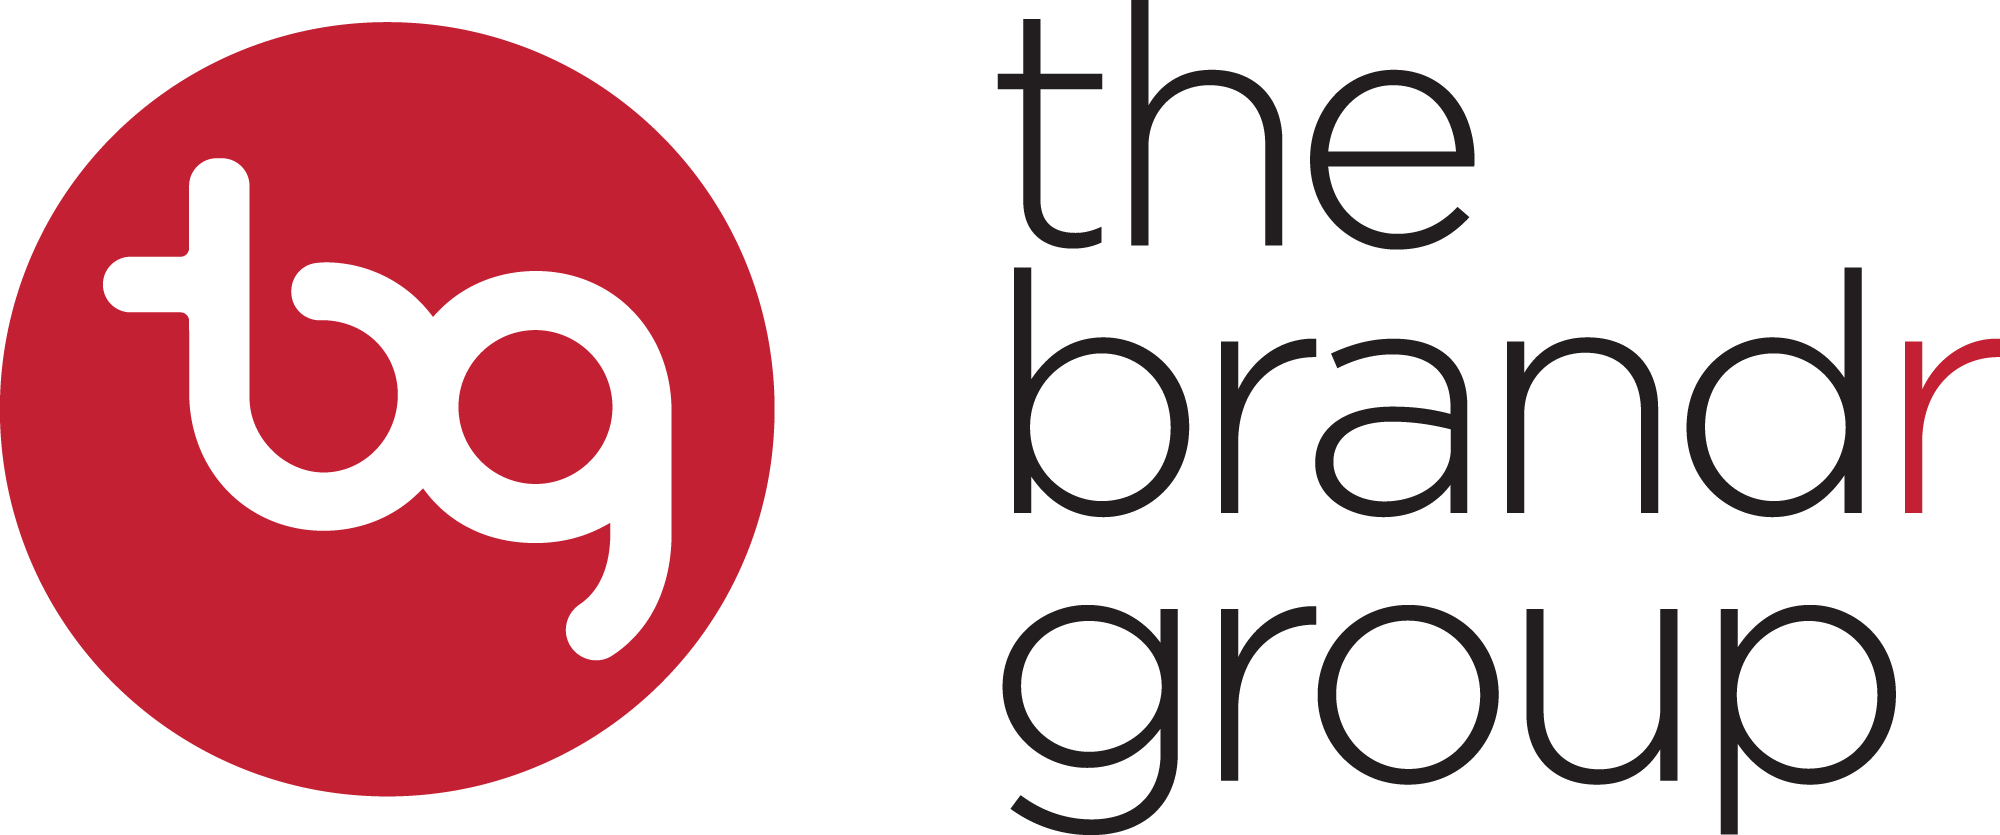 The Brandr Group